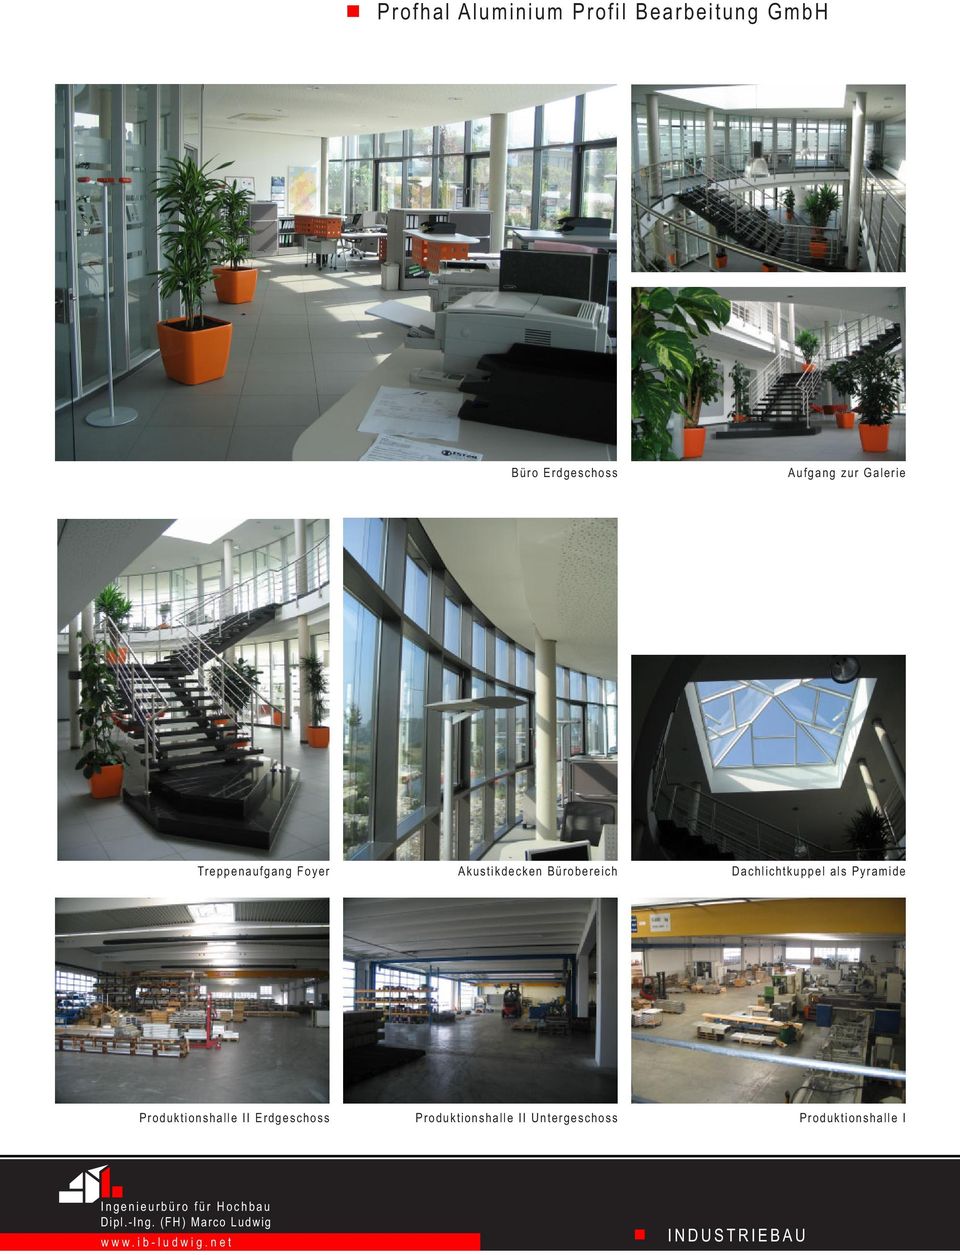 Bürobereich Dachlichtkuppel als Pyramide Produktionshalle